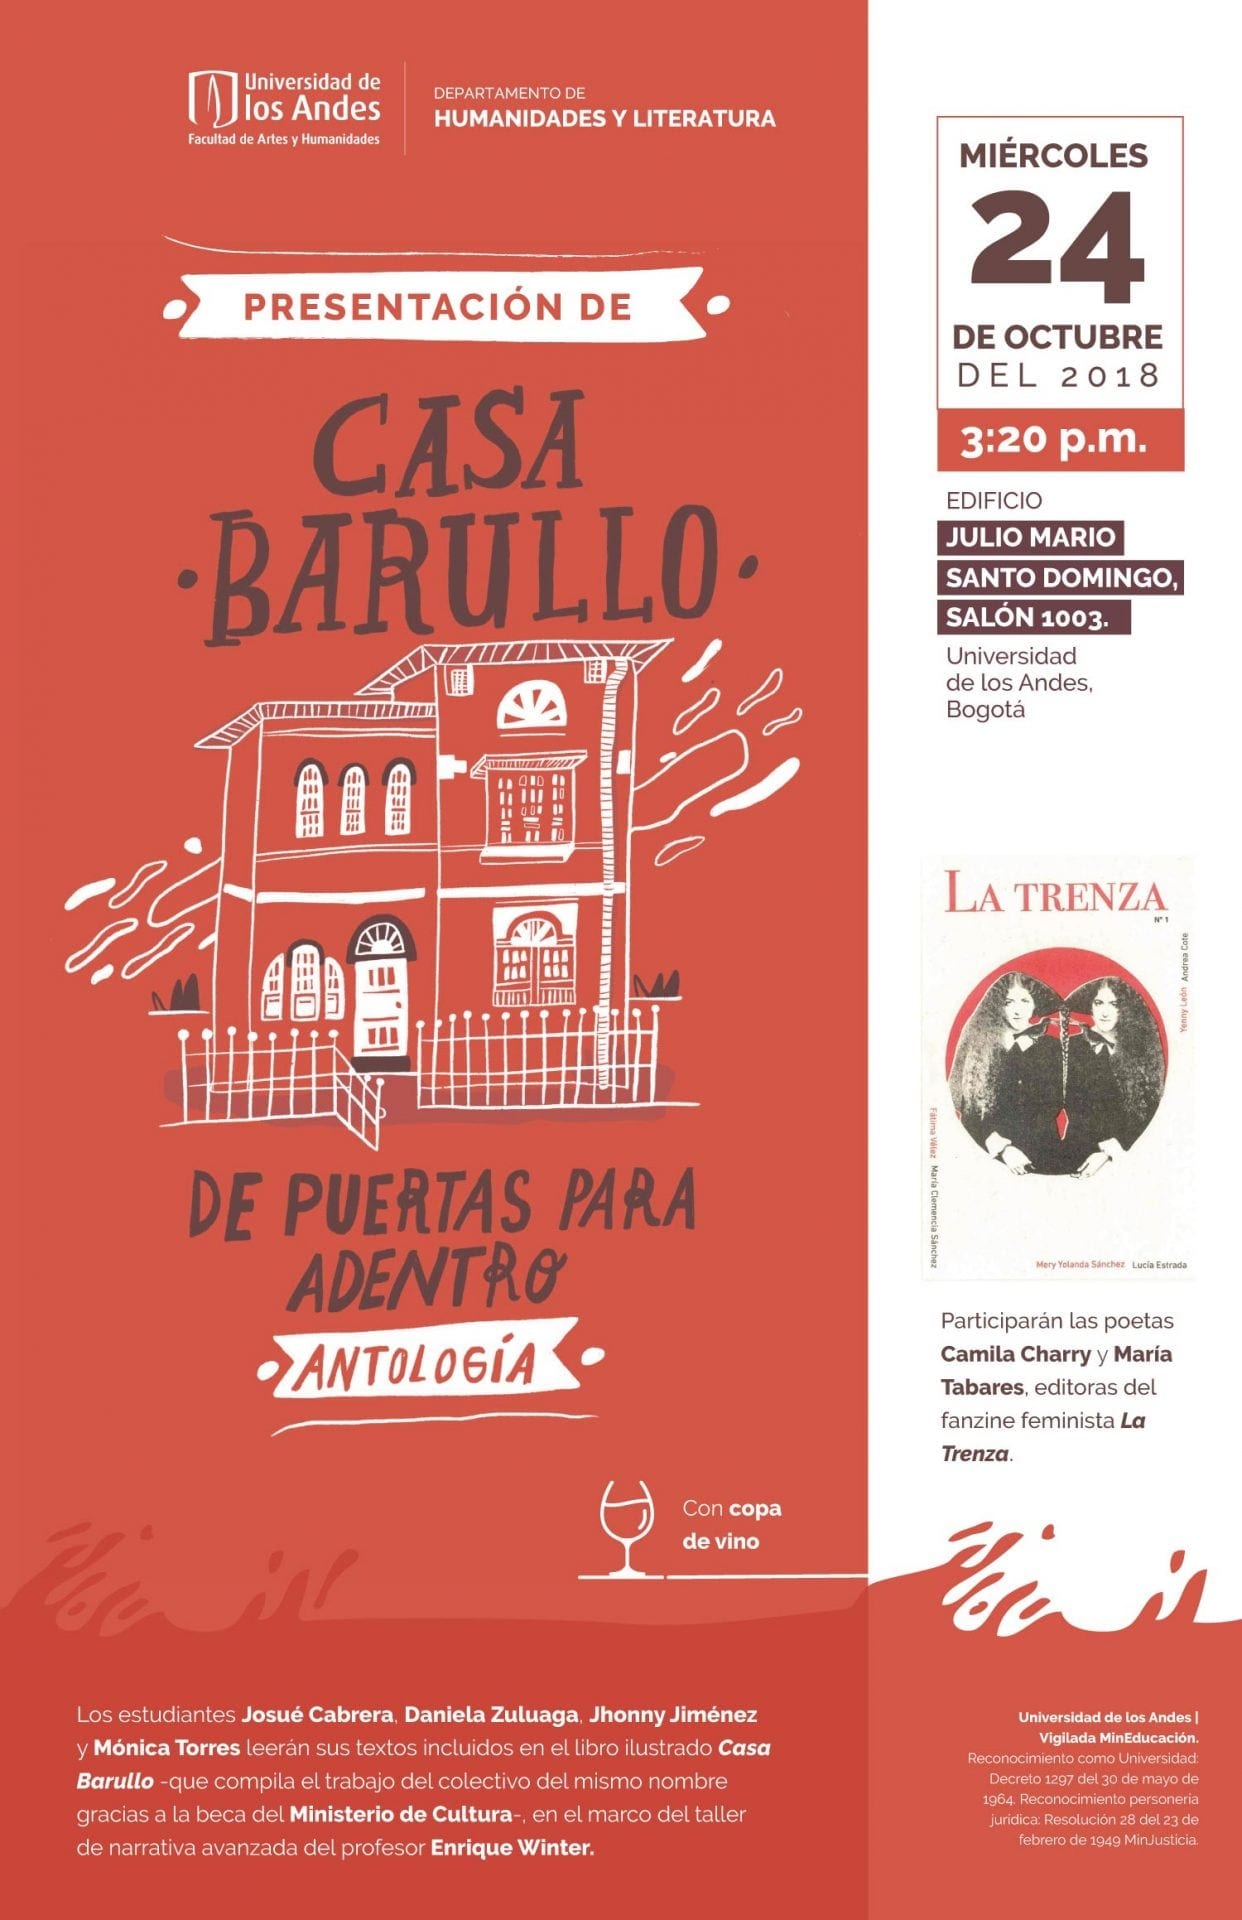 Los estudiantes Josué Cabrera, Daniela Zuluaga, Jhonny Jiménez y Mónica Torres leerán sus textos incluidos en el libro ilustrado Casa Barullo